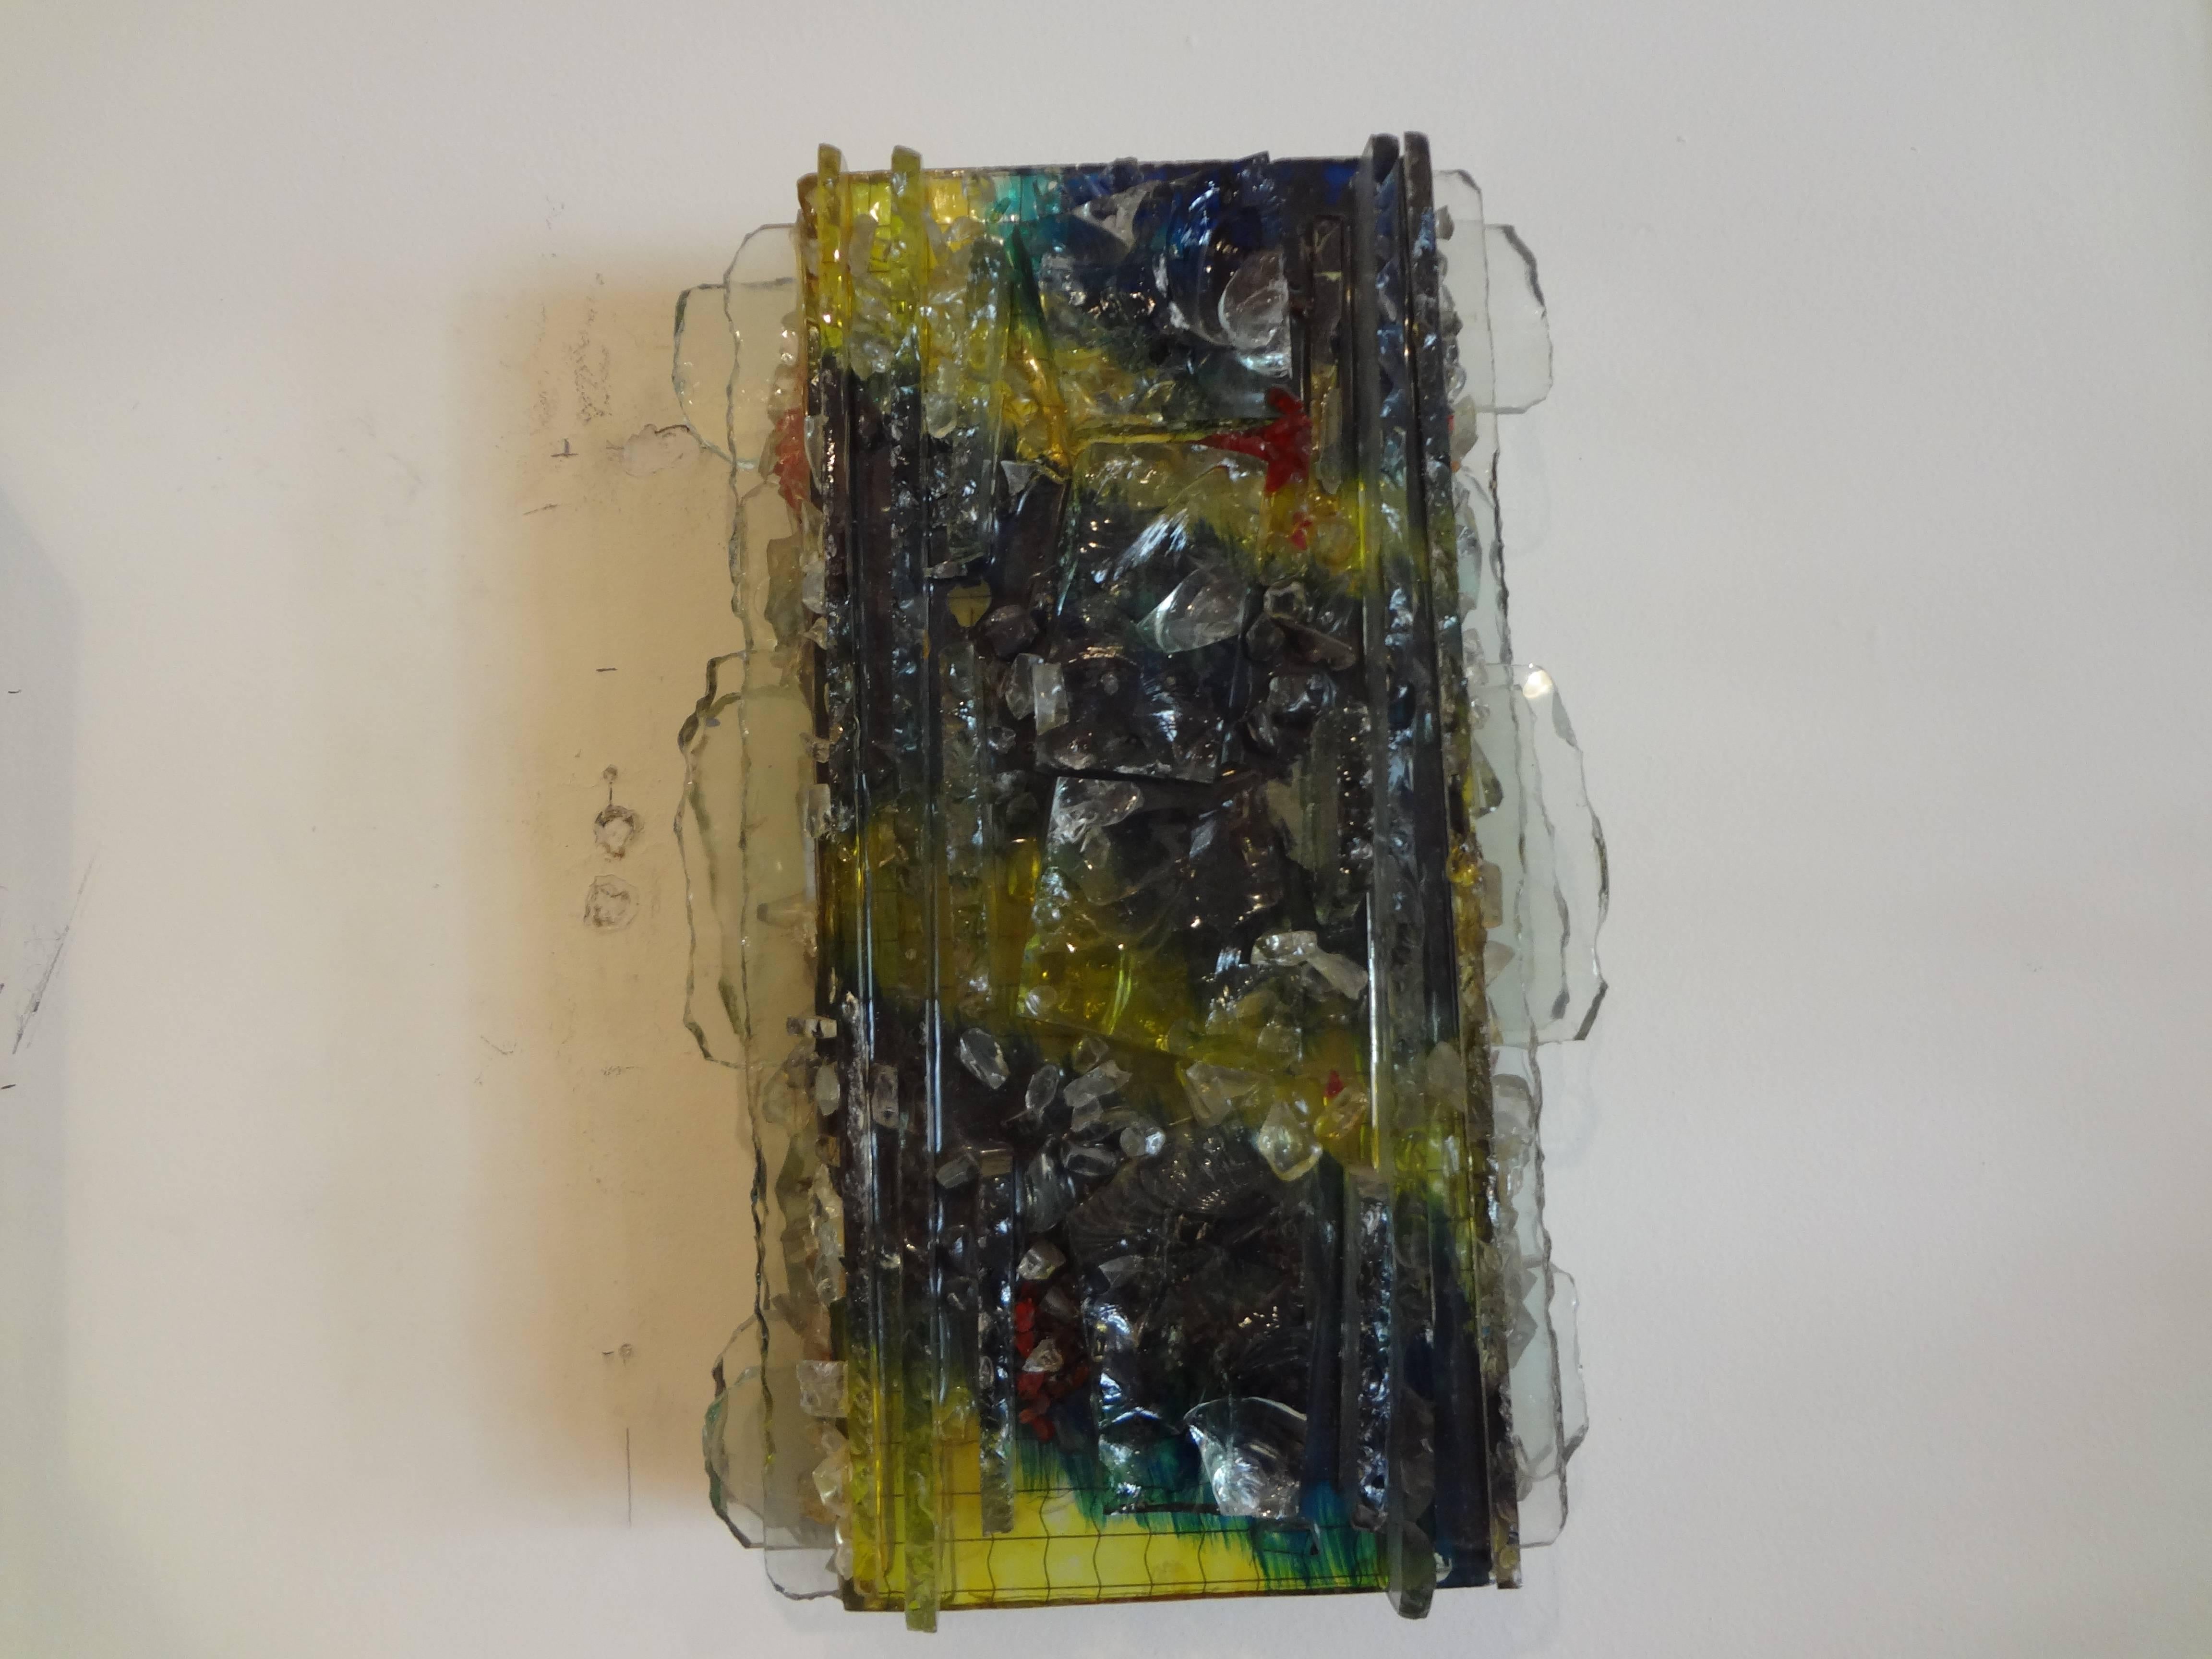 Intéressante paire d'appliques en verre multicolore sur cadre métallique par A. Lankhorst pour RAAK Amsterdam, Pays-Bas, circa 1964, nouvellement câblées pour le marché américain.
Ces étonnantes appliques en verre sont représentatives du mouvement